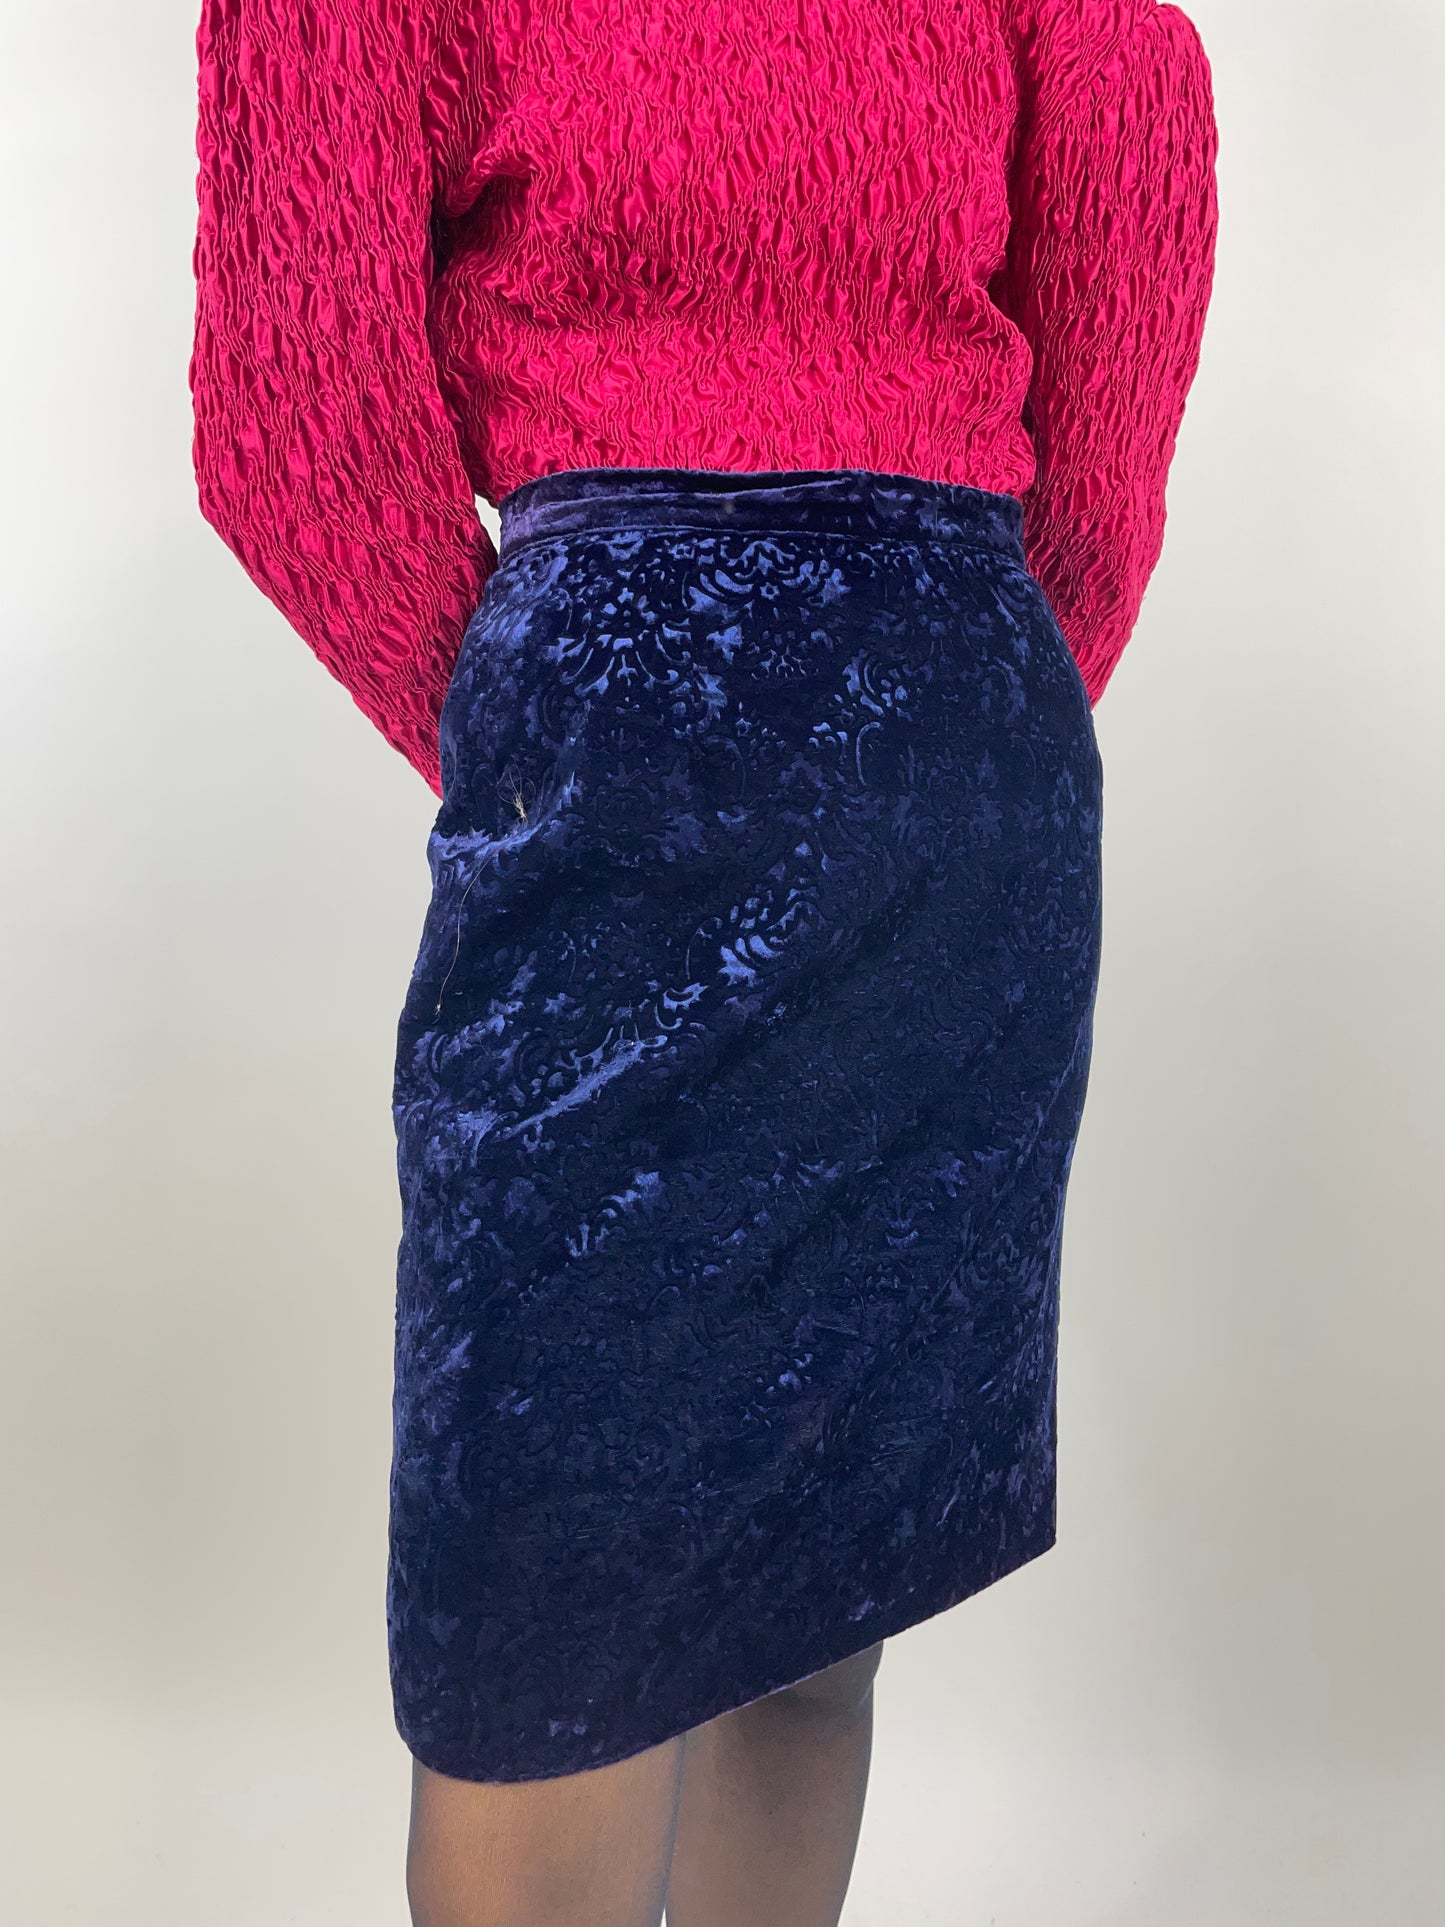 1980s jacquard skirt